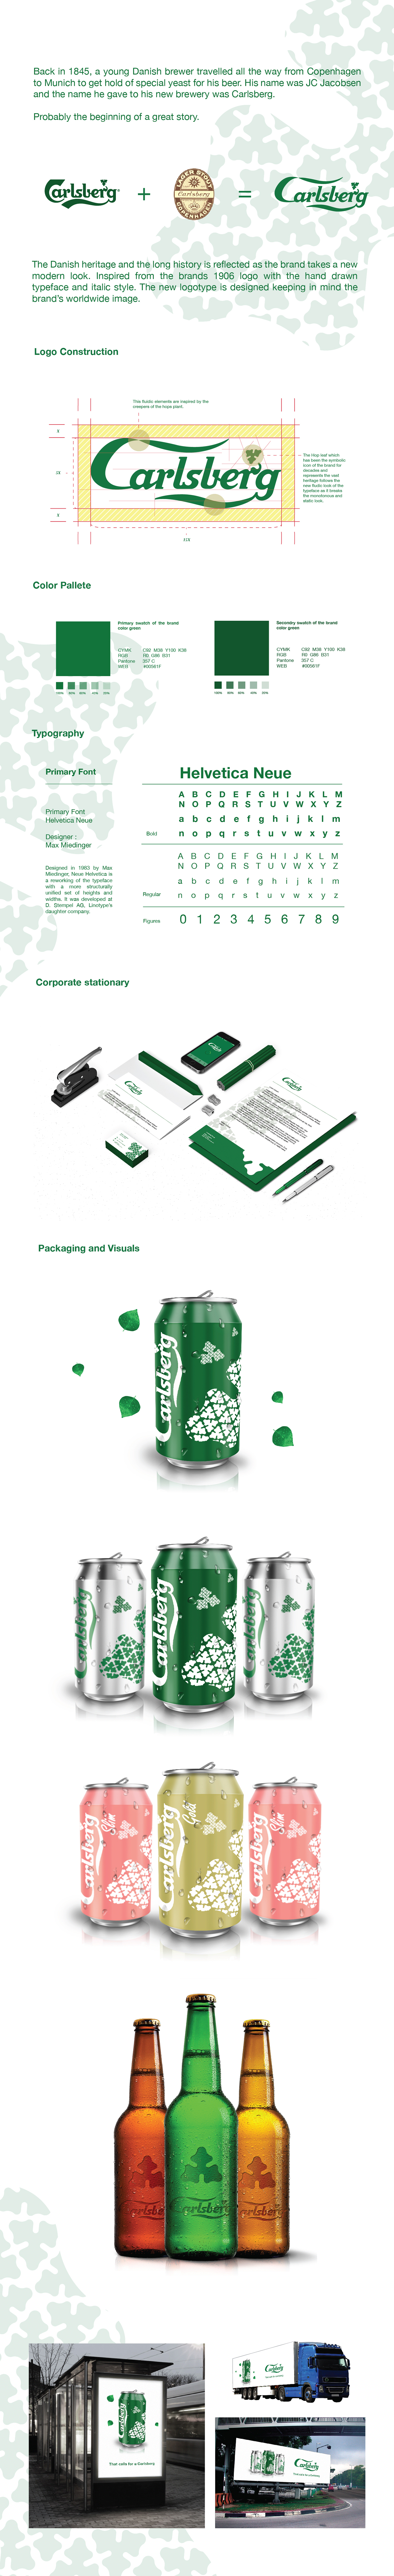 re-branding Carlsberg beer